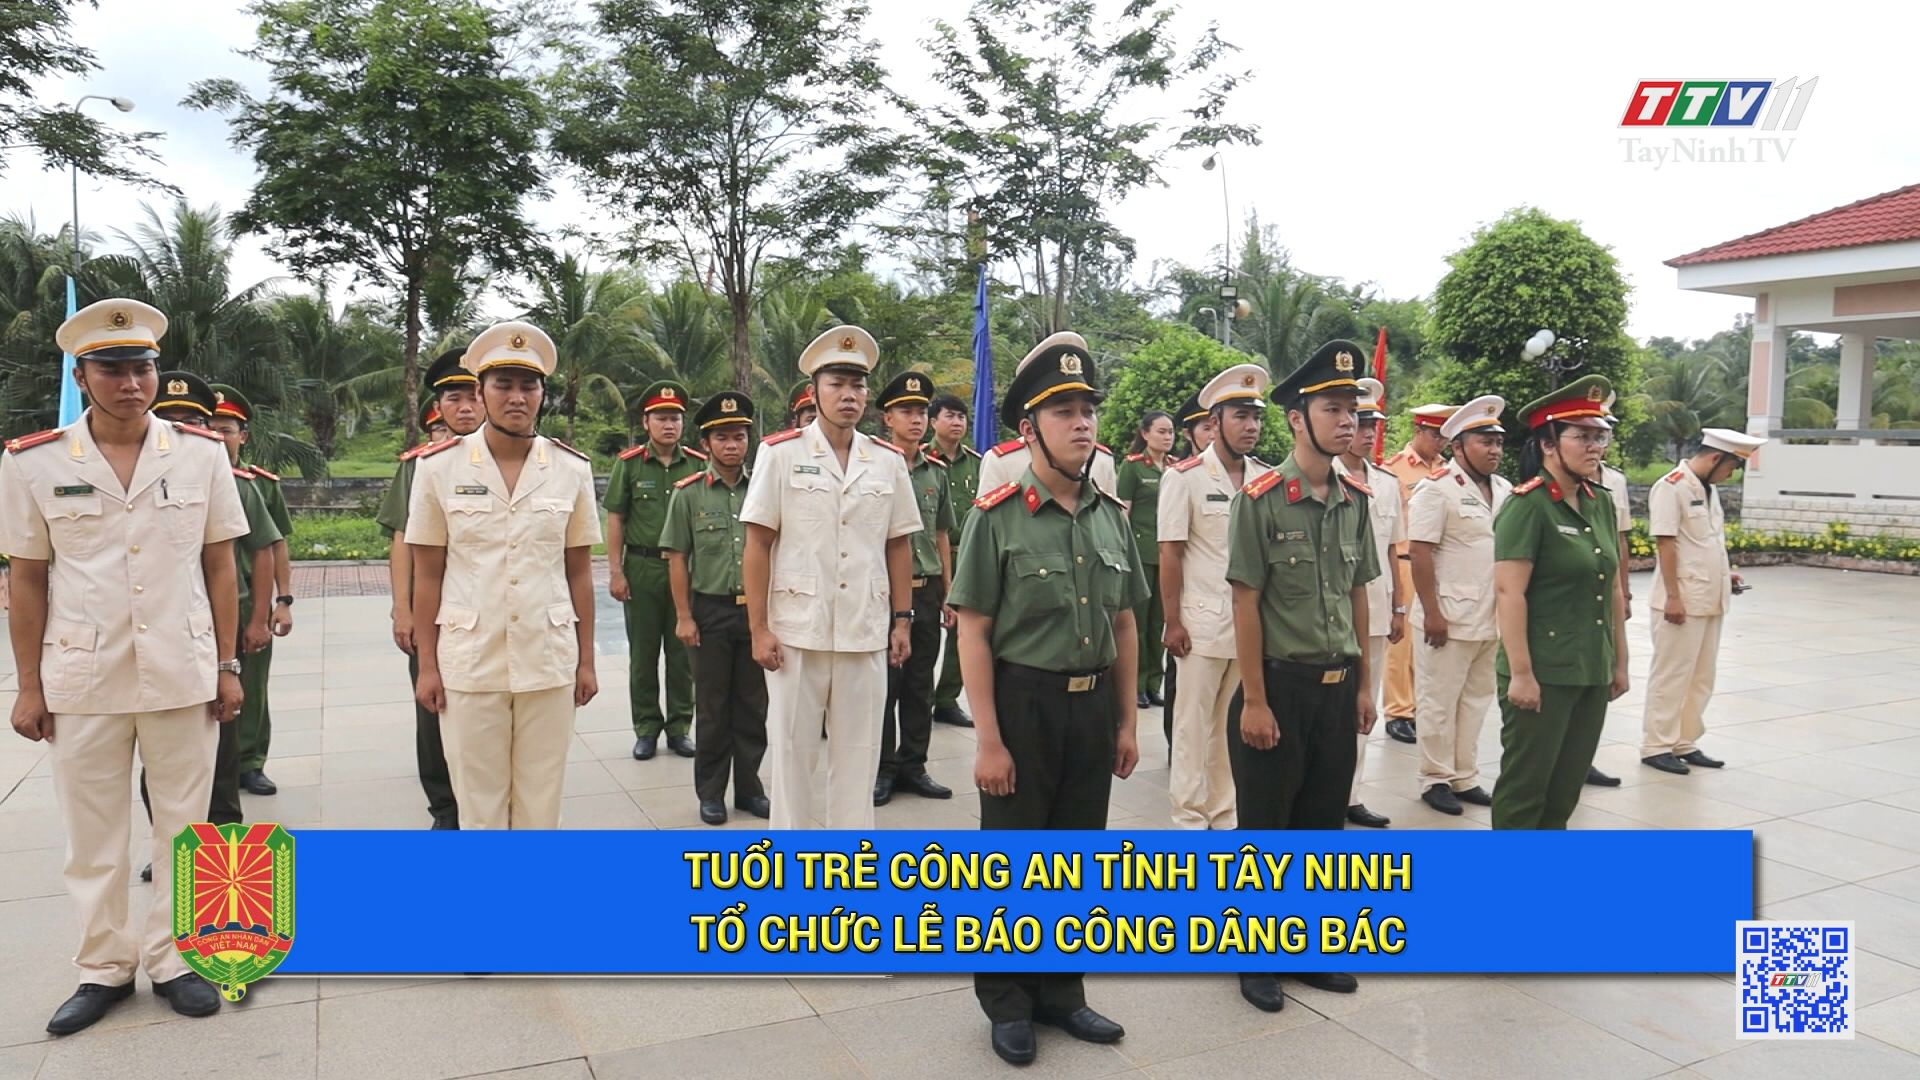 Tuổi trẻ Công an tỉnh Tây Ninh: Tổ chức lễ báo công dâng Bác | AN NINH TÂY NINH | TayNinhTV